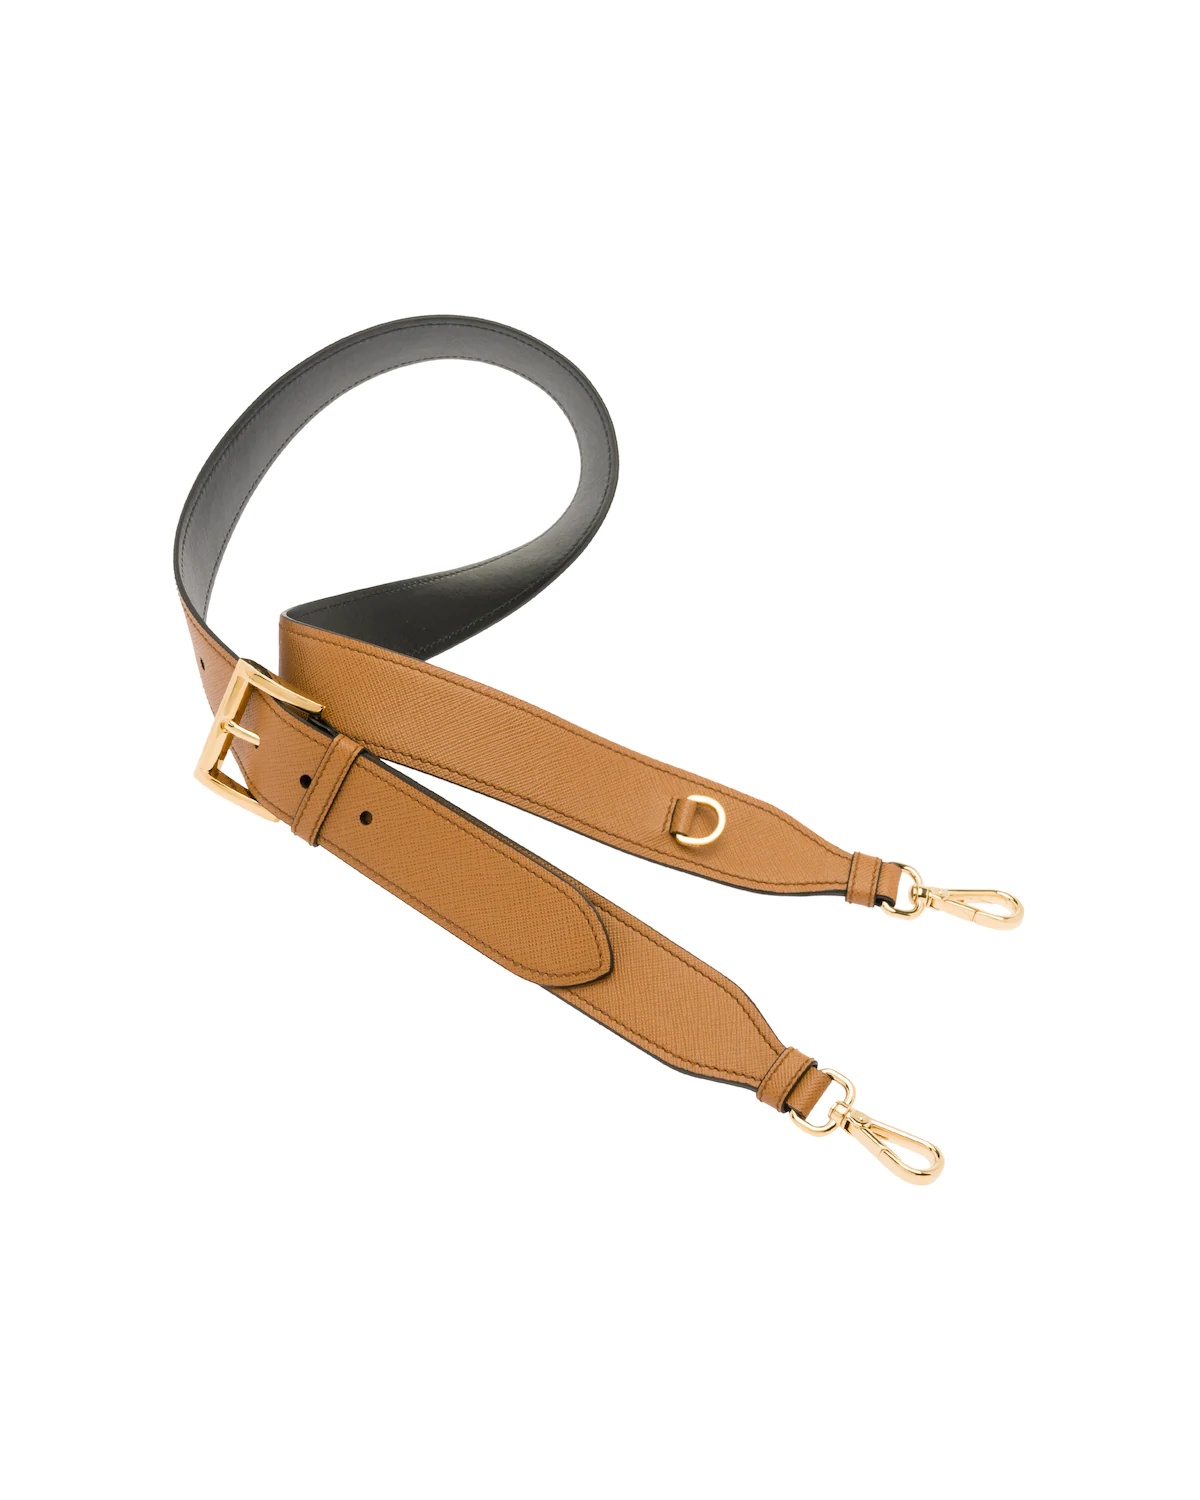 Adjustable Saffiano leather shoulder strap - 1